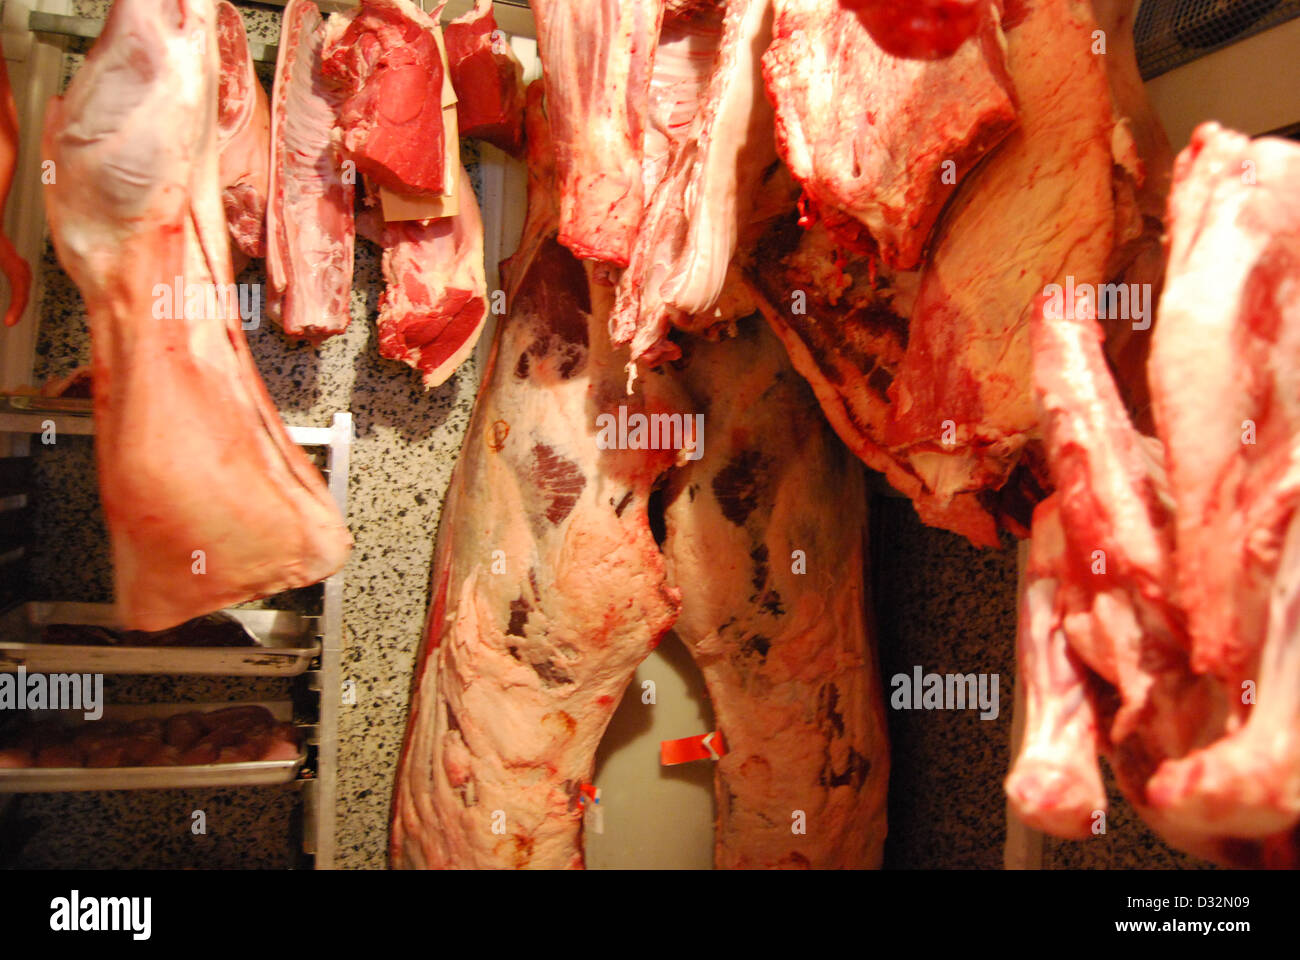 Platten von Fleisch und Wurstwaren, Schwein, Lamm, weißem und rotem Fleisch hängen in einem Metzger Kühllagerung warten darauf geschnitten und sortiert werden. Stockfoto